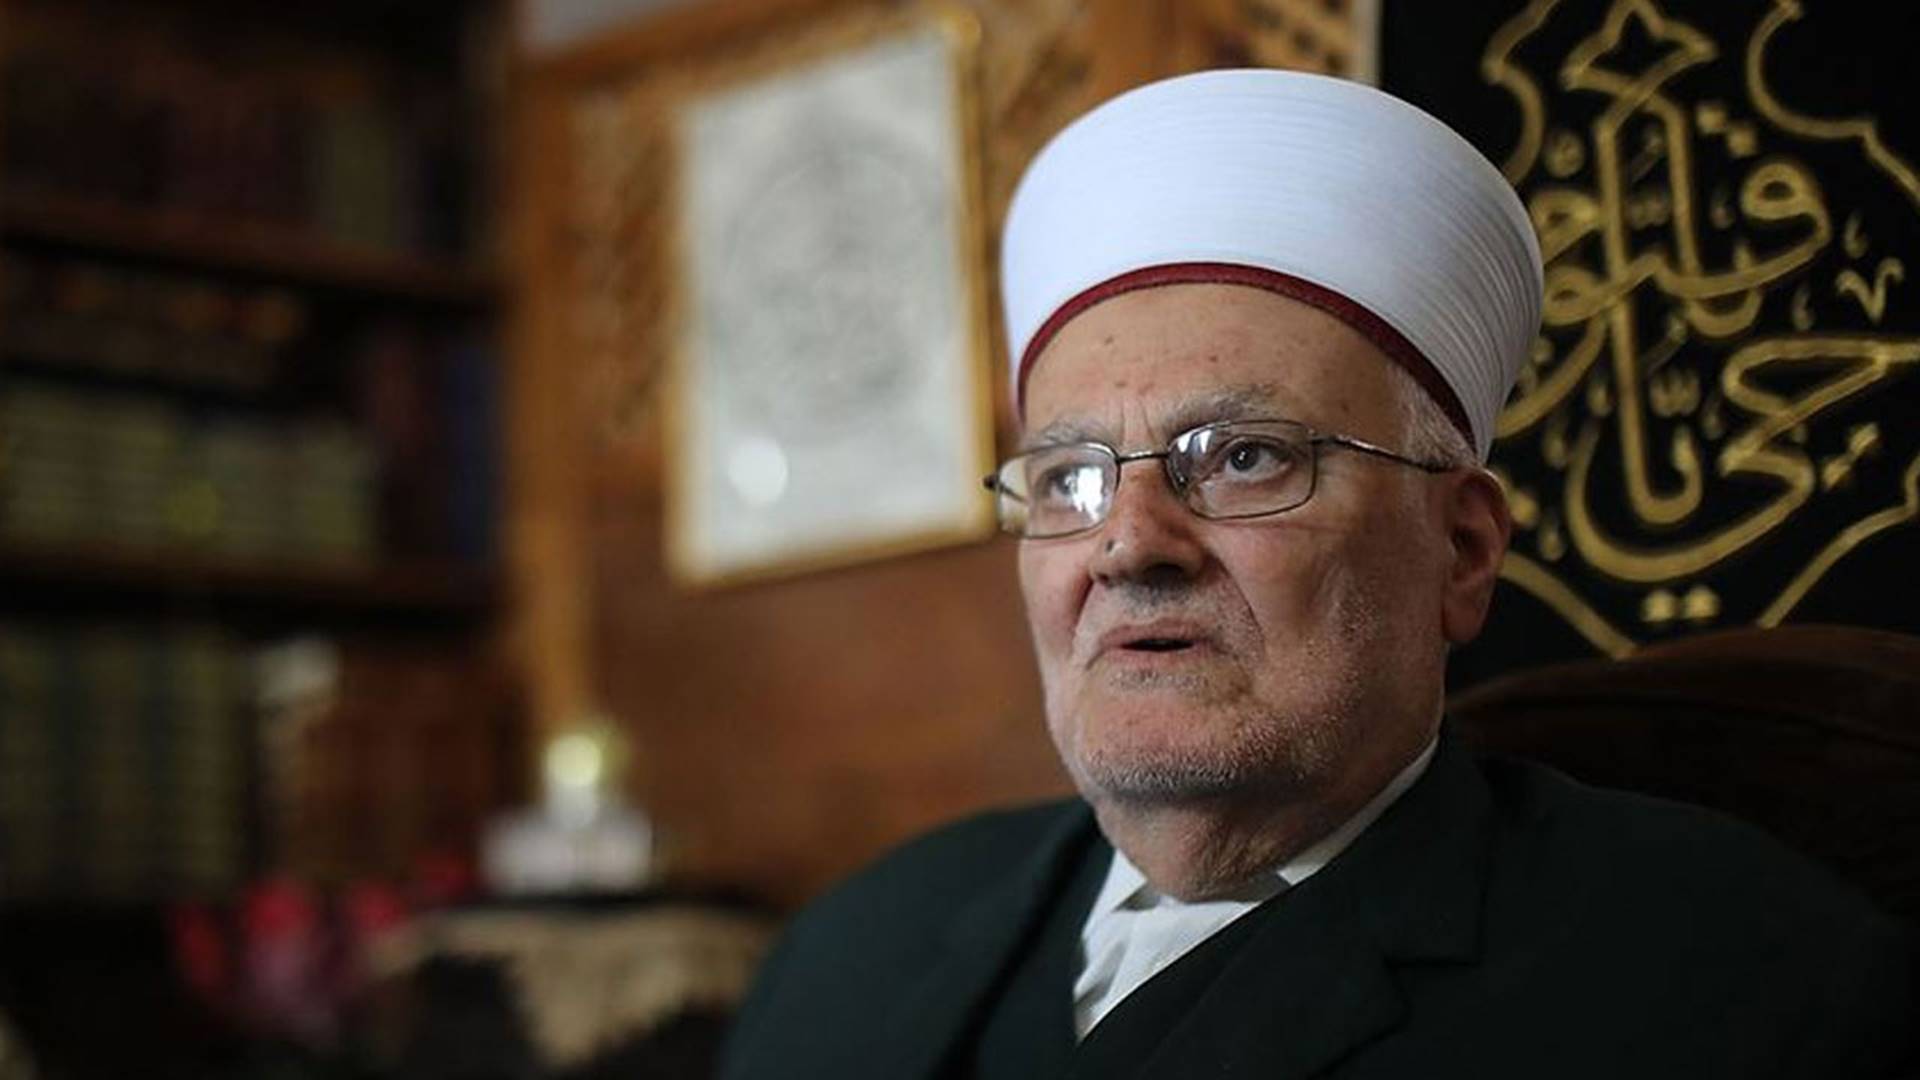 Israel arrests Al-Aqsa preacher Sheikh Ekrima Sabri